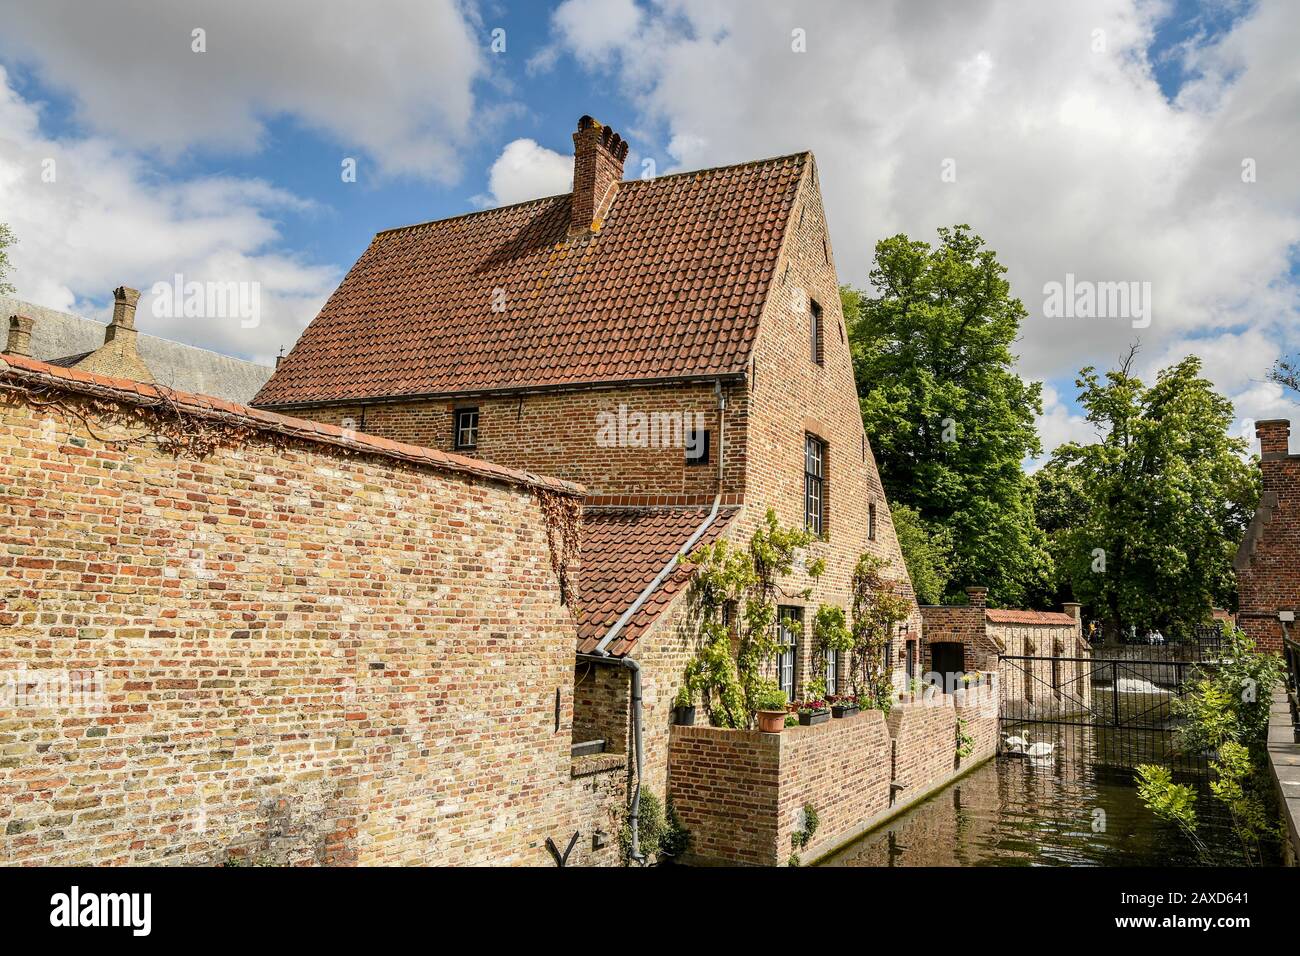 Belles maisons et canaux d'eau avec des cygnes nageurs dans la ville charmante, paisible, romantique et intemporelle de Bruges pour explorer à vélo ou à pied. Banque D'Images